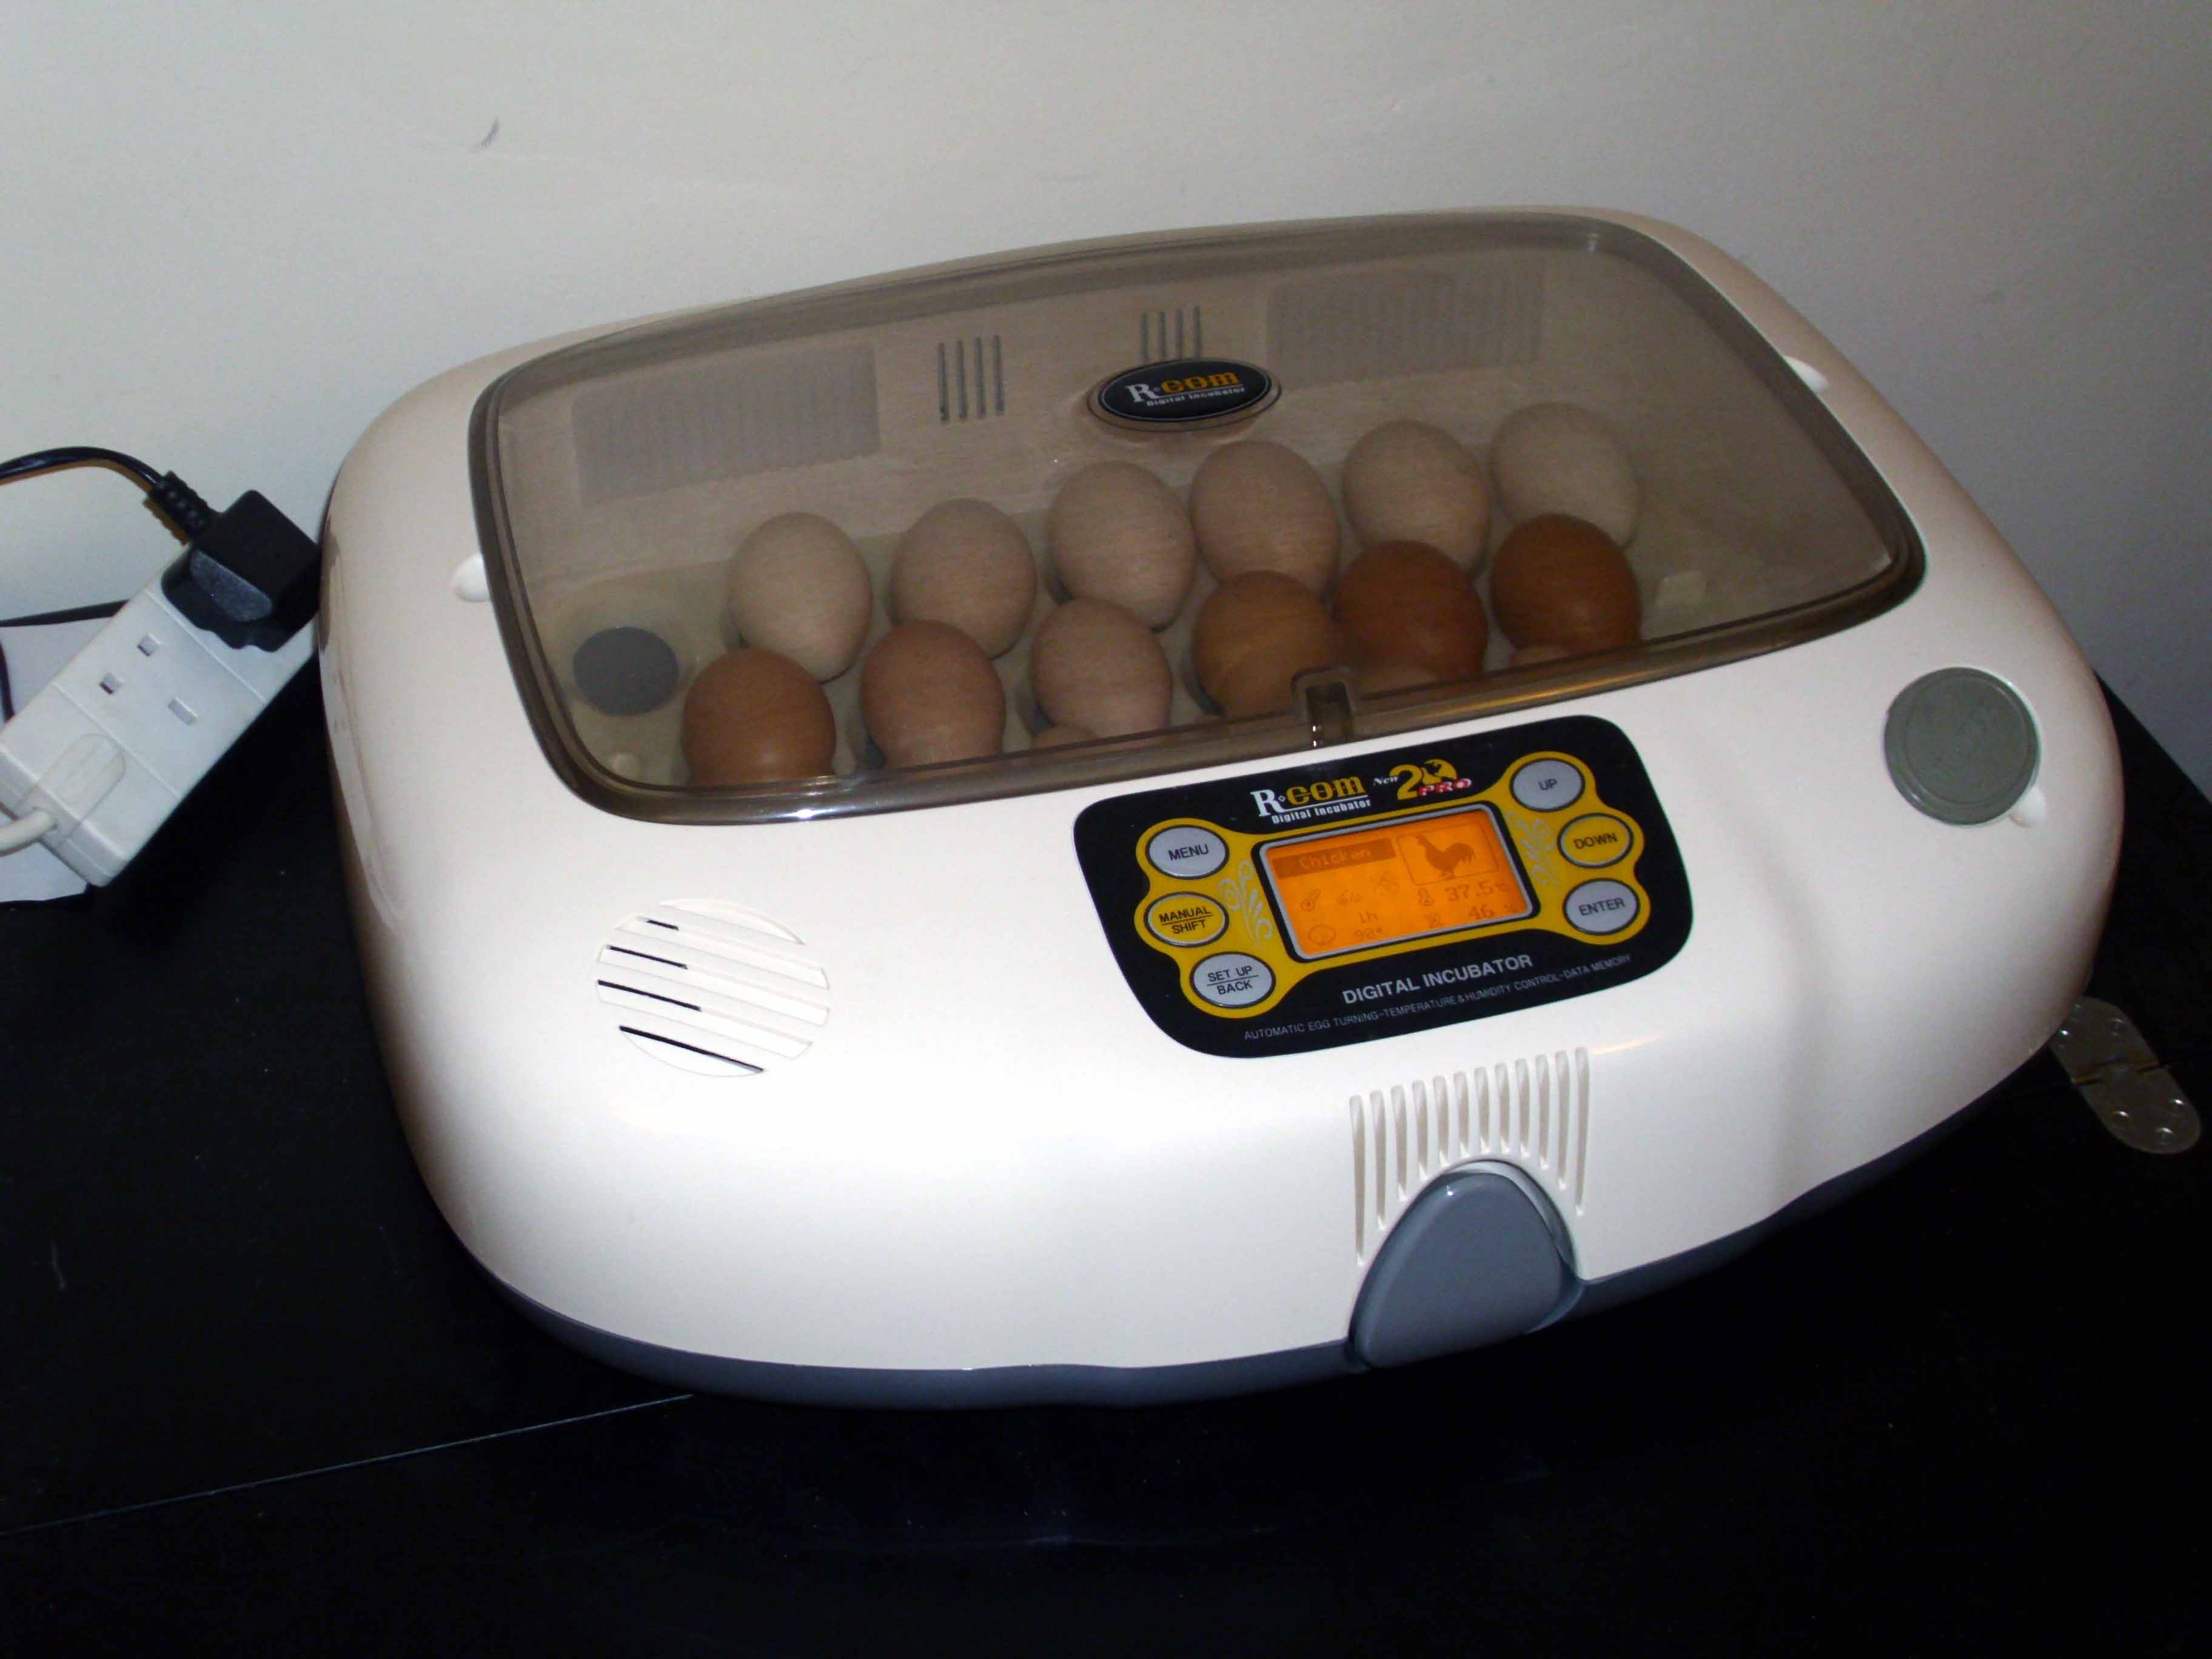 Egg Incubator